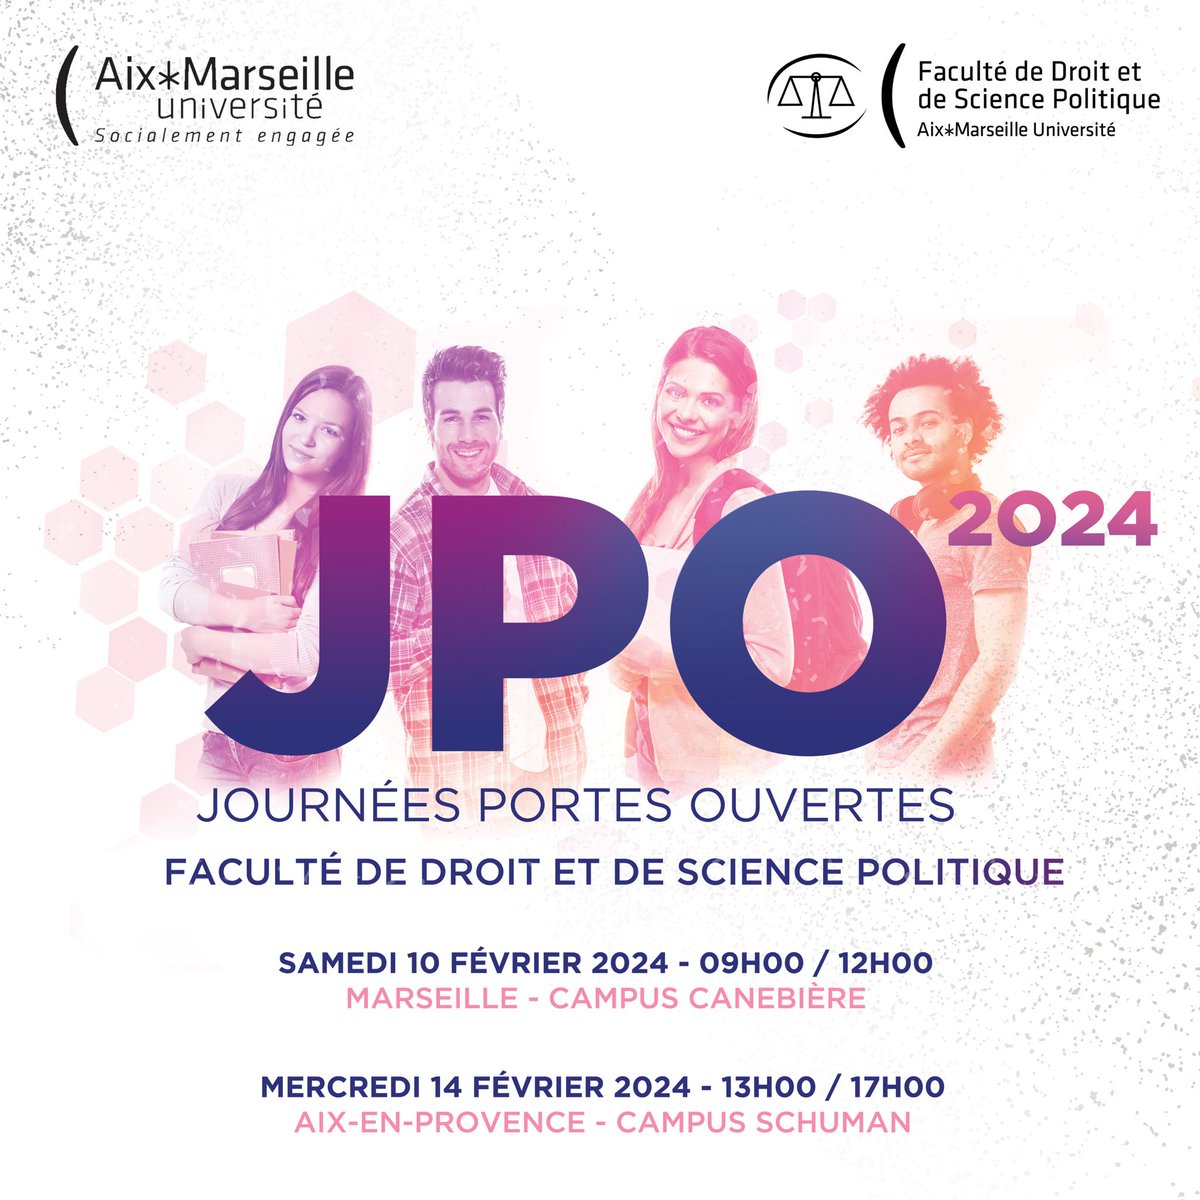 Rendez-vous les 10 & 14 février 2024 pour les journées portes ouvertes de la #Faculté de droit et de science politique d’Aix-Marseille Université ! #droit #sciencepolitique #jpo